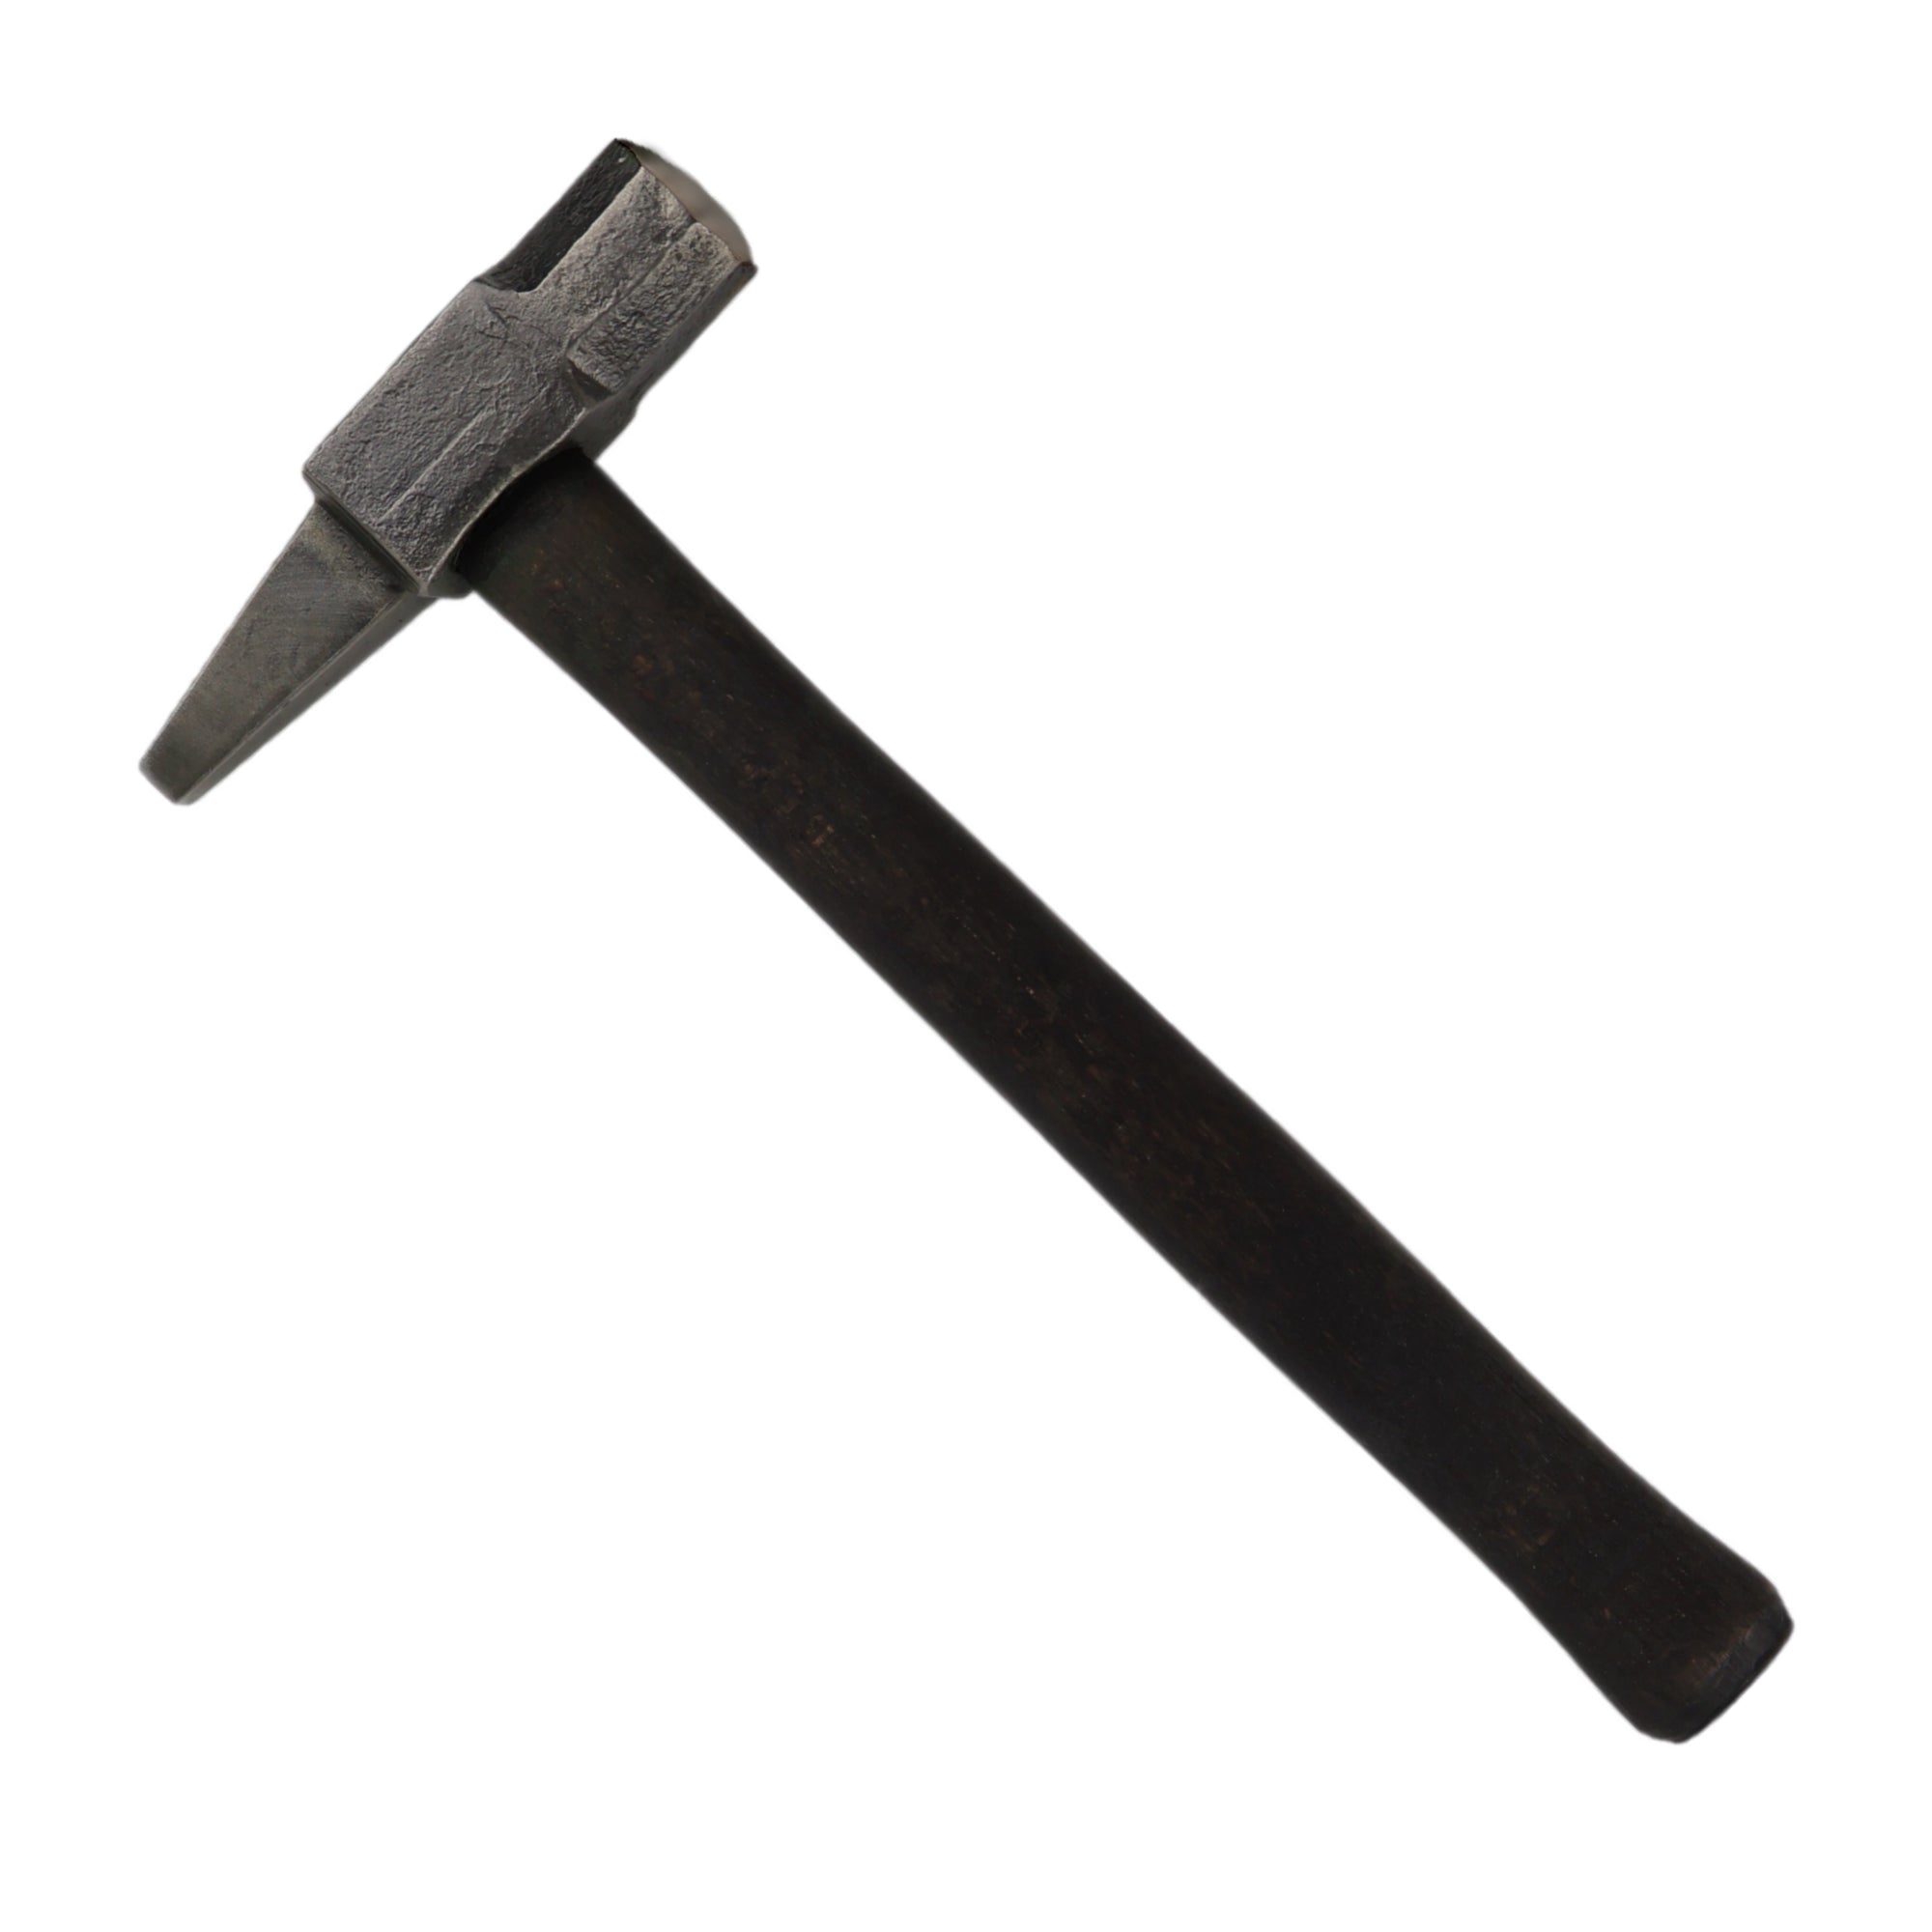 Hot Punch Square Hammer Drift for Blacksmiting 2.2 lbs